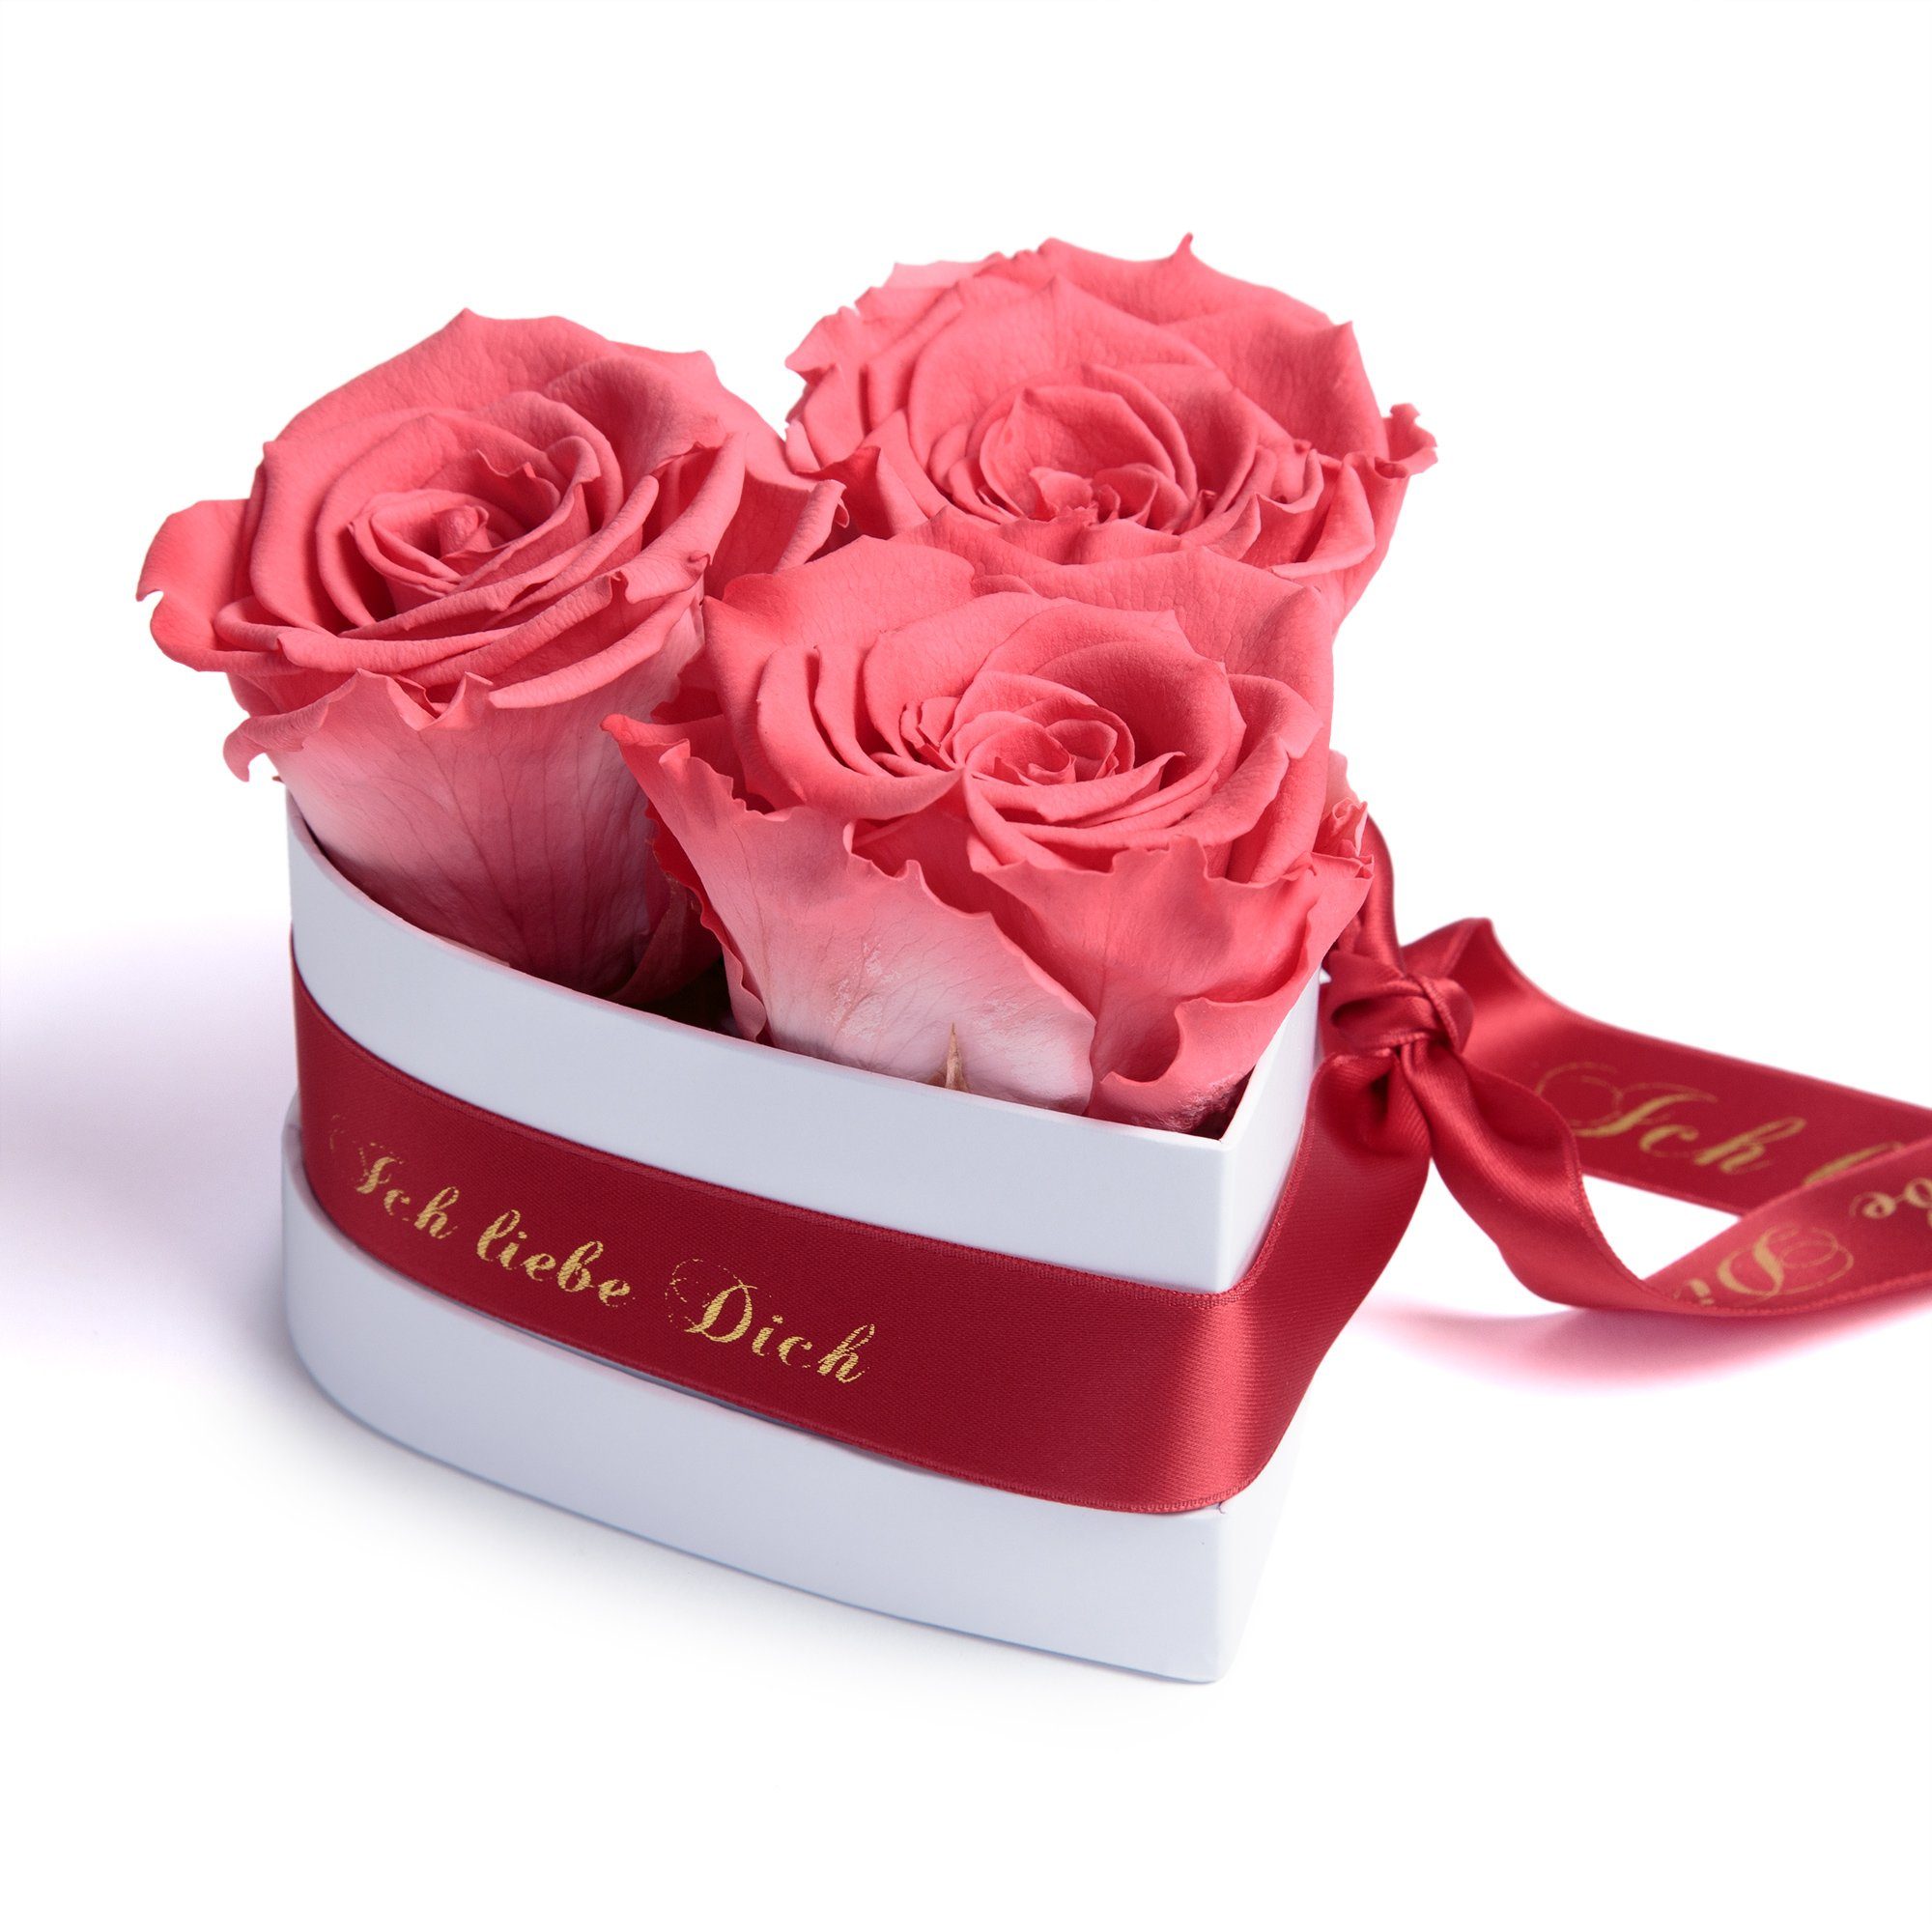 Kunstblume Rosenbox Herz 3 infinity Rosen Ich liebe Dich Geschenk für Sie Rose, ROSEMARIE SCHULZ Heidelberg, Höhe 10 cm, Liebesbeweis Valentinstag korall-rot